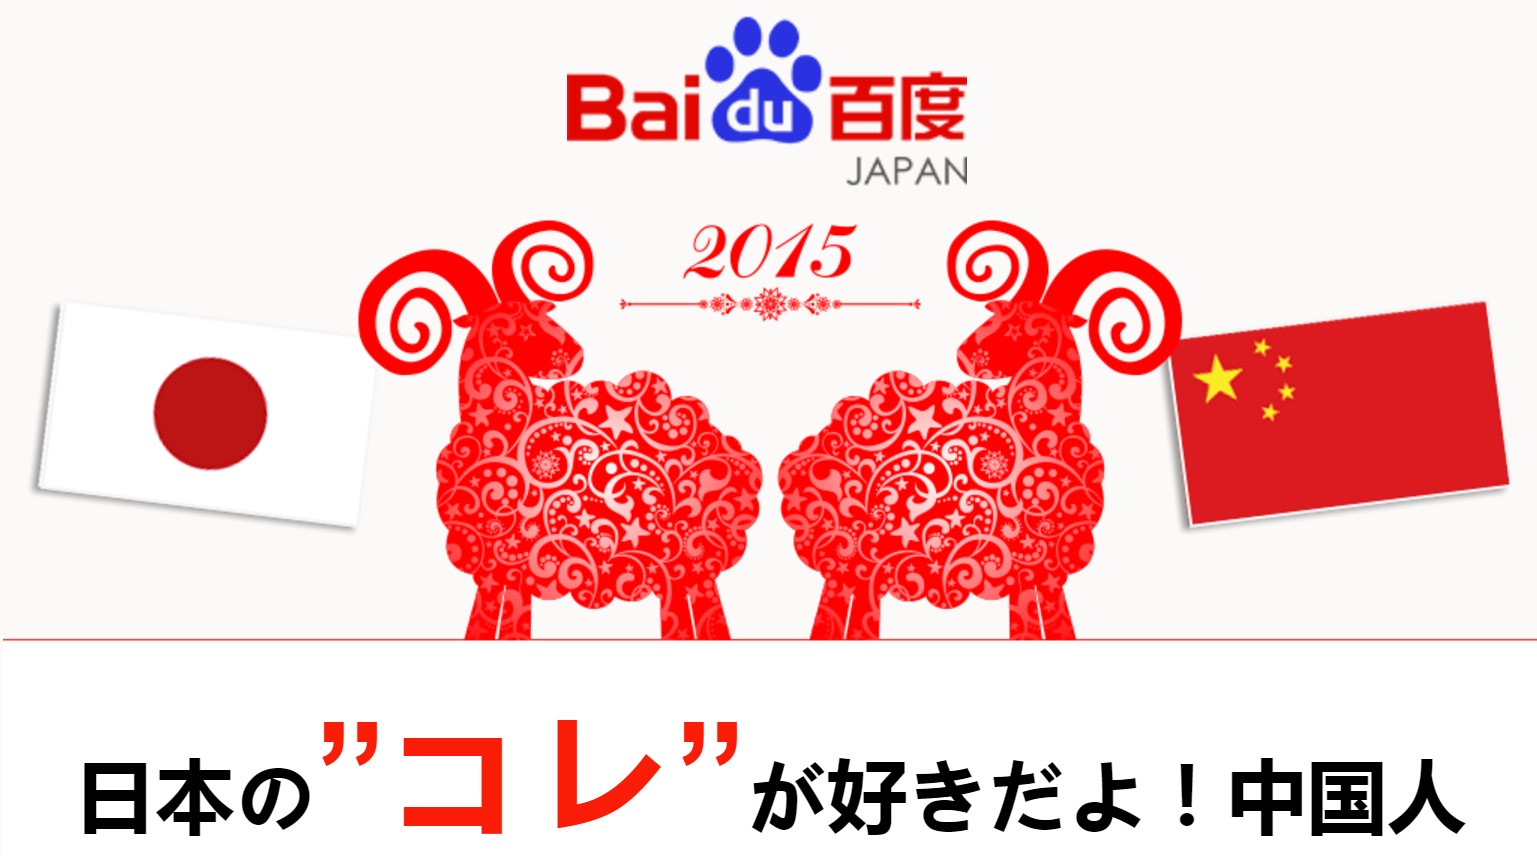 日本の コレ が好きだよ 中国人 バイドゥ 中国百度検索より日本に関する検索キーワードランキングを発表 バイドゥ株式会社のプレスリリース